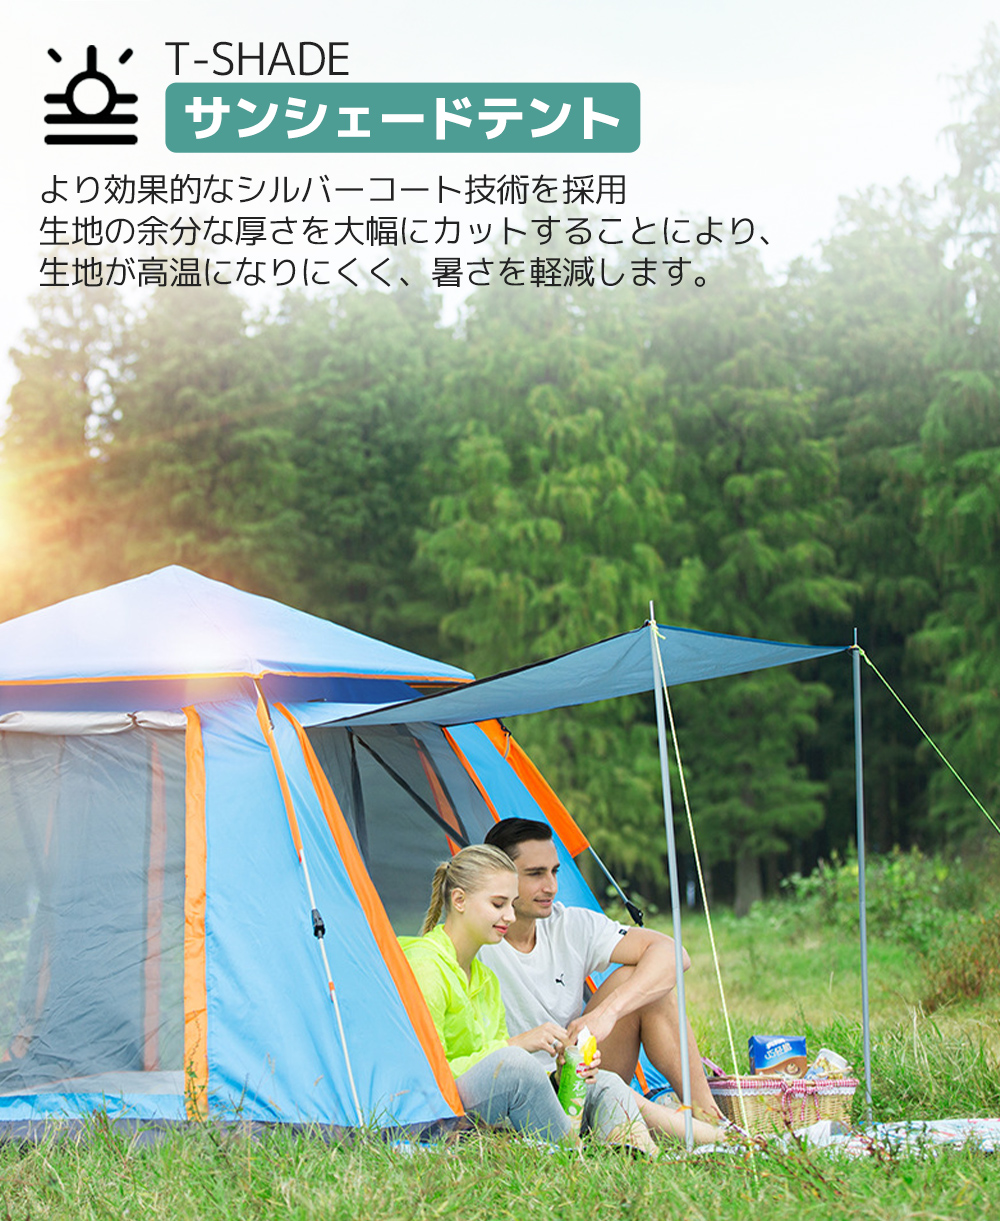 新品 テント 3-4人用 ワンタッチテント UVカットコーティング採用 キャンプ